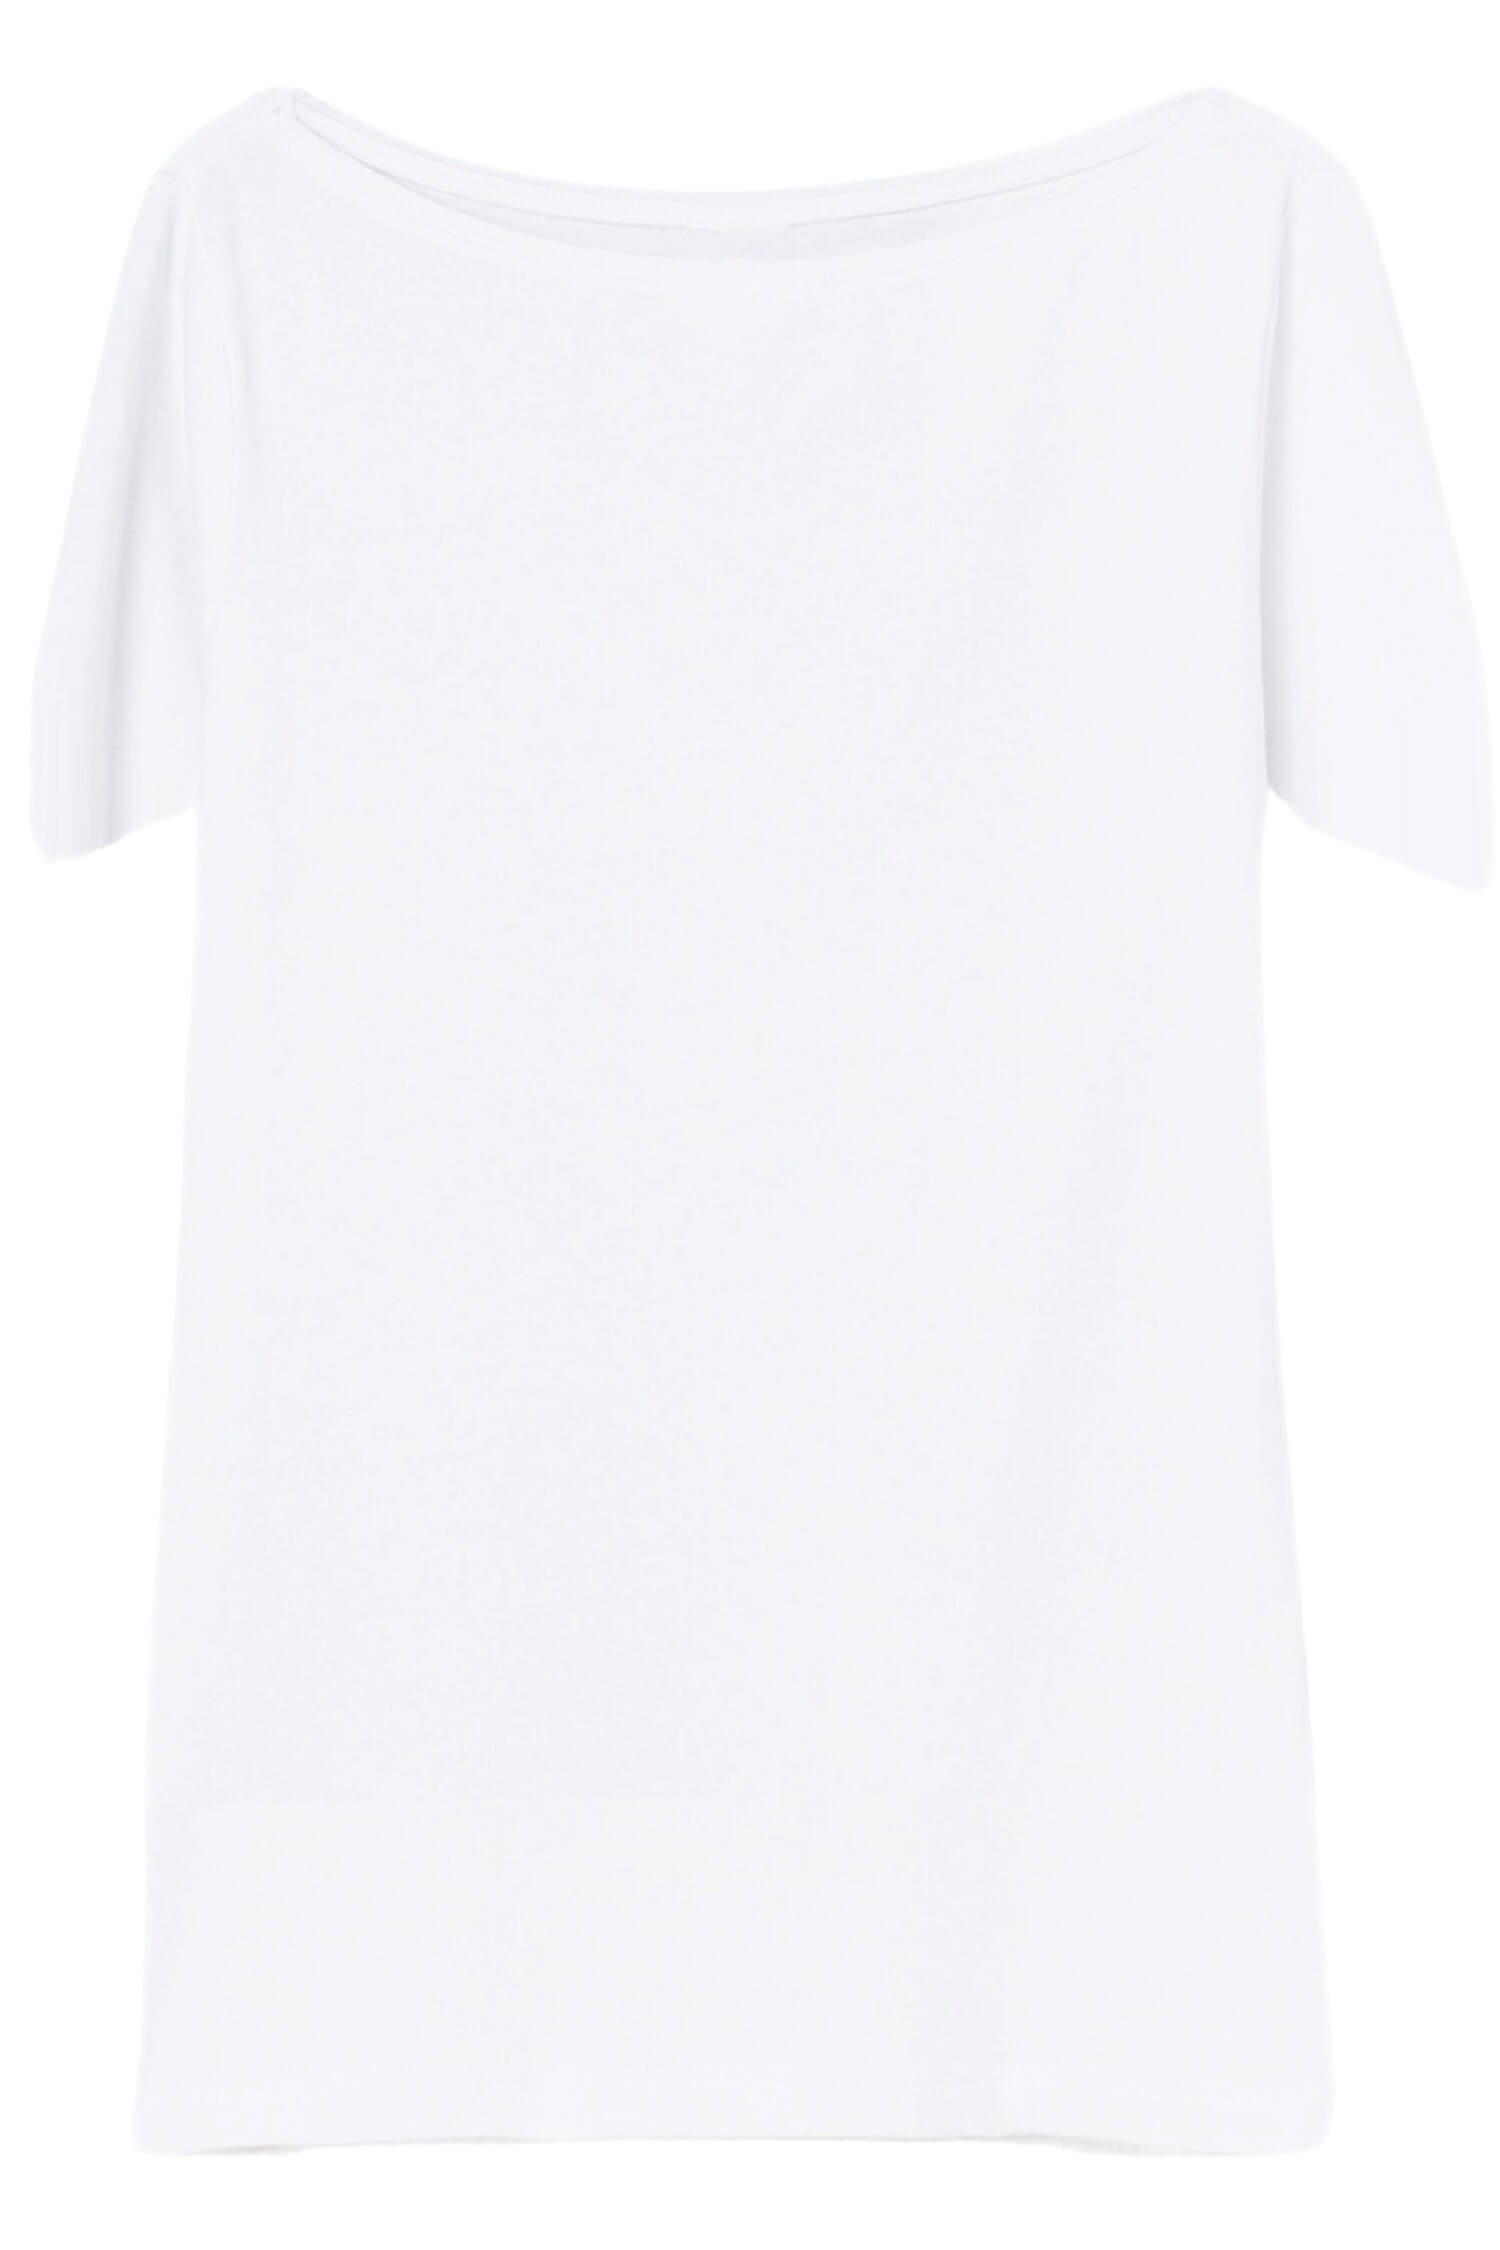 Danica dámské tričko s krátkým rukávem TSK-1005 L bílá